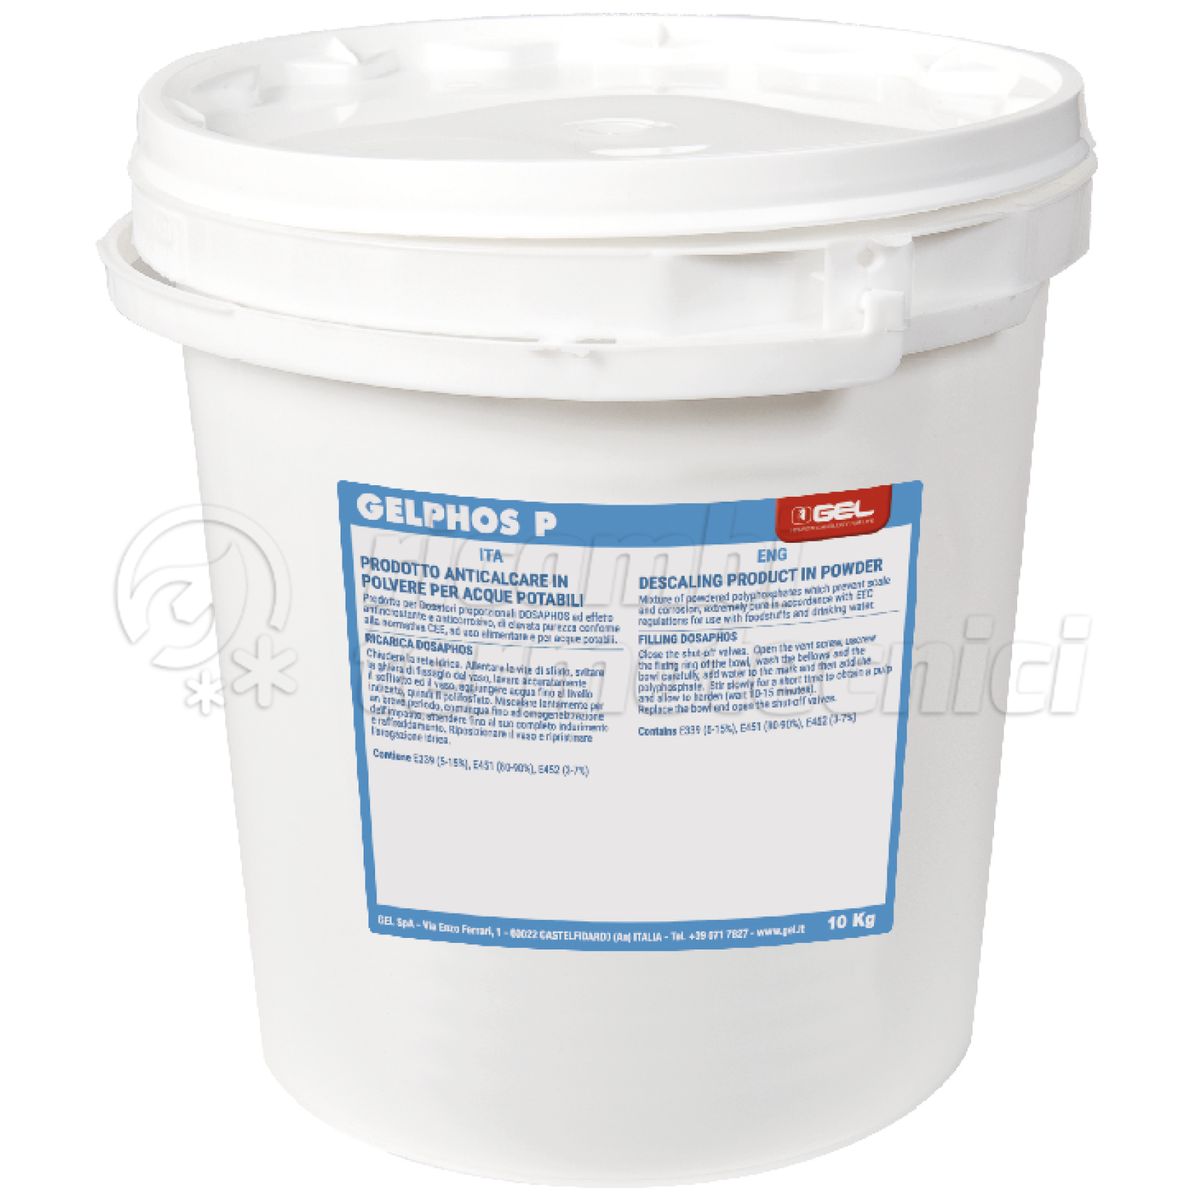 Polifosfato in polvere IDRAFOS 55 per dosatori proporzionali